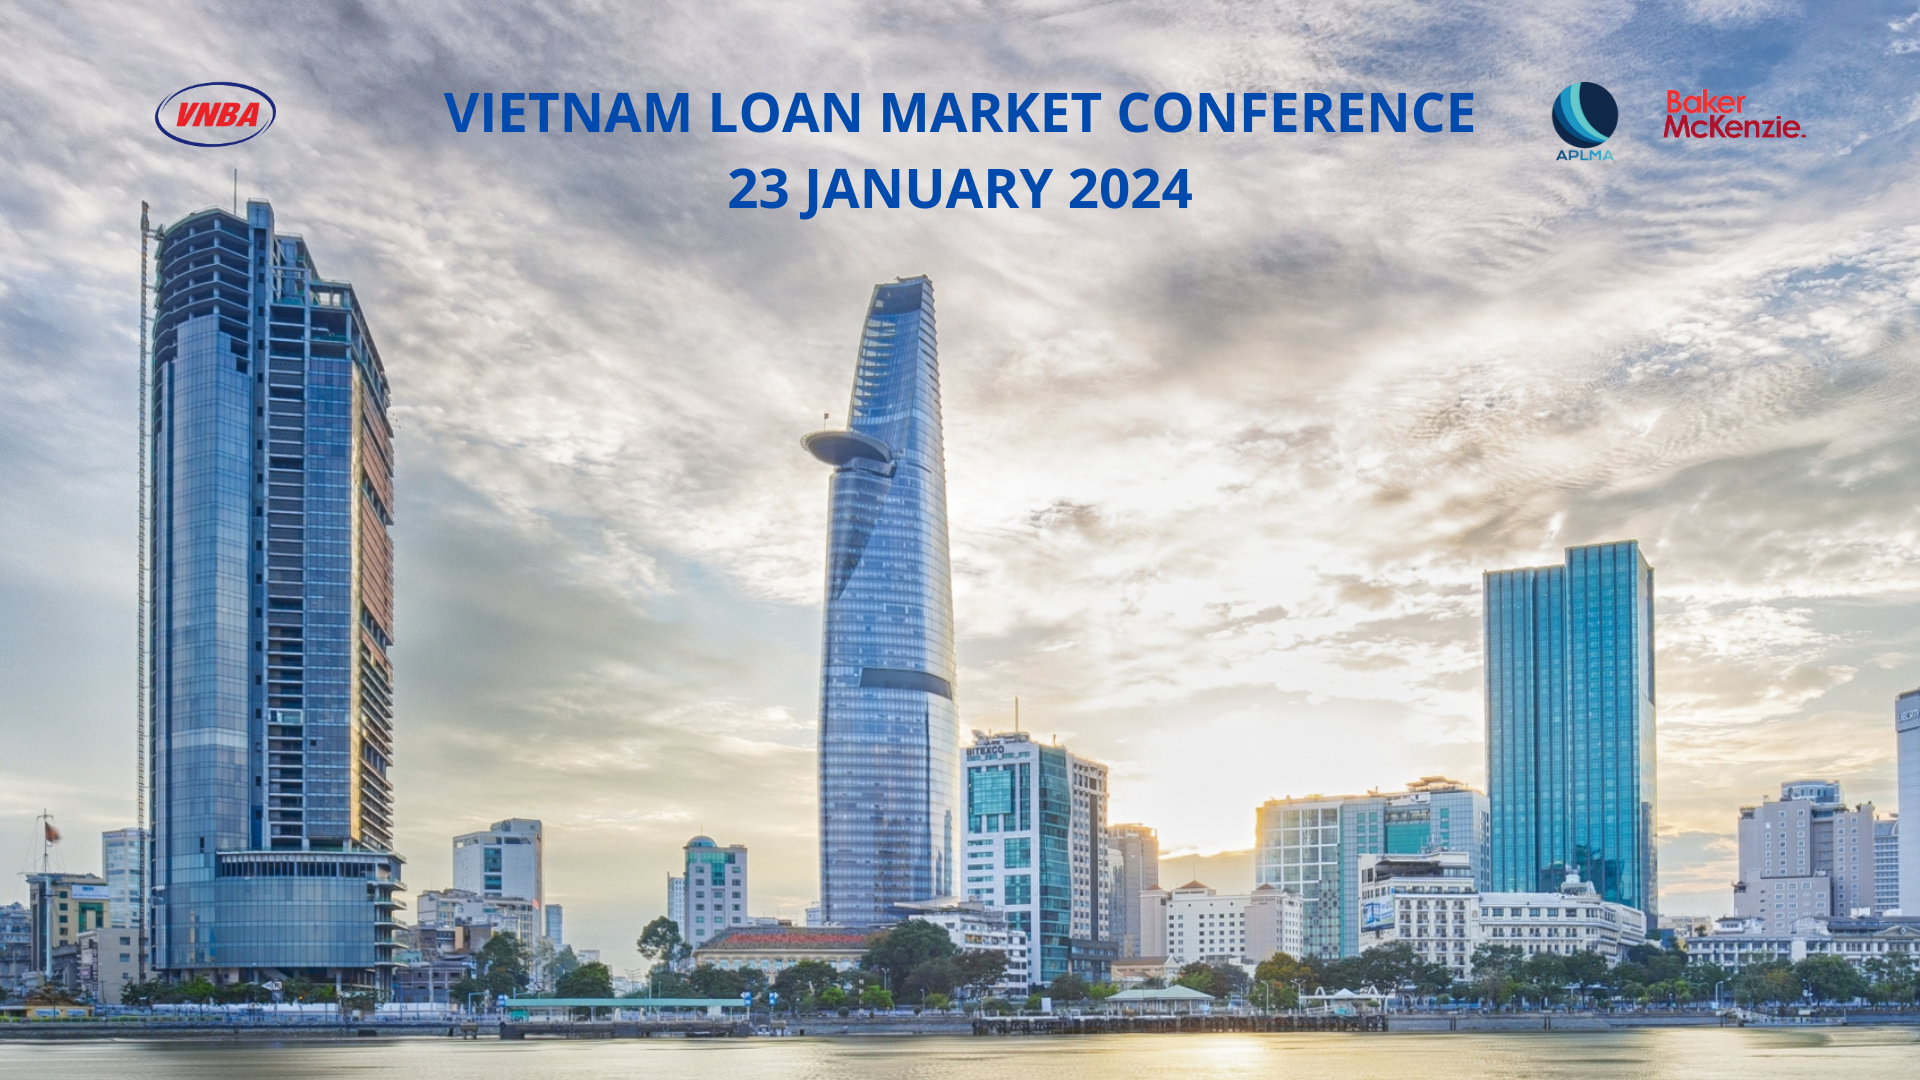 Hội nghị: "Thị trường Cho vay Việt Nam 2024"